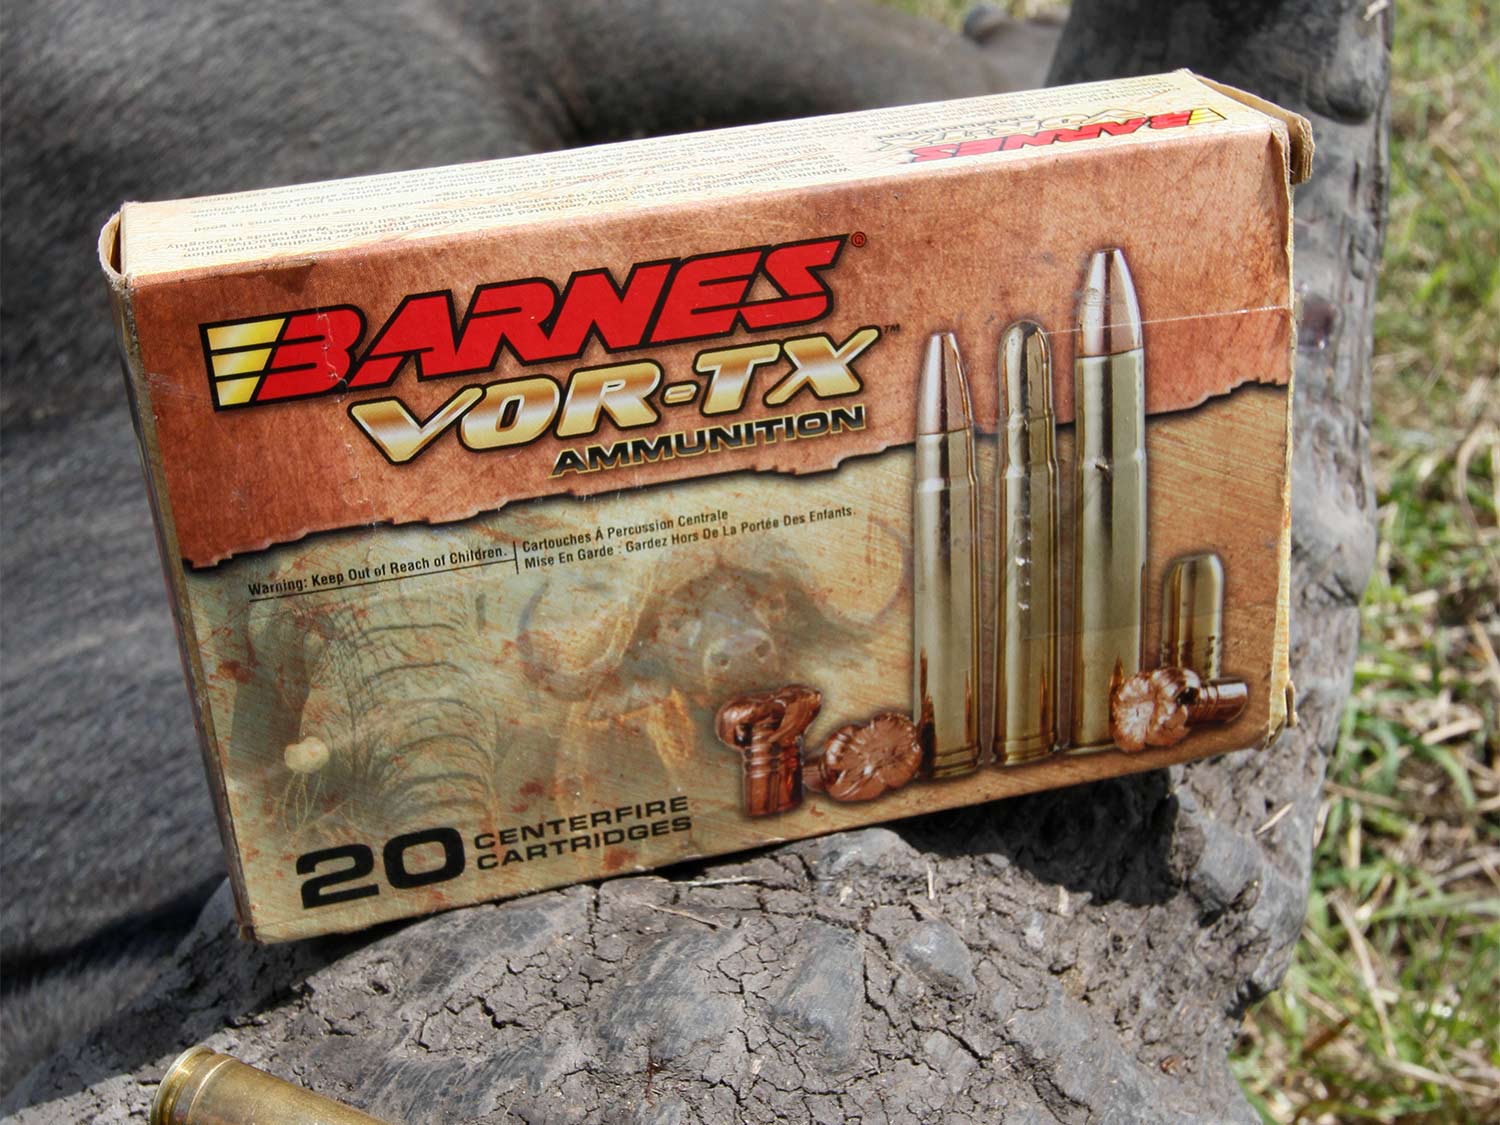 A box of Barnes VOR-TX ammo.